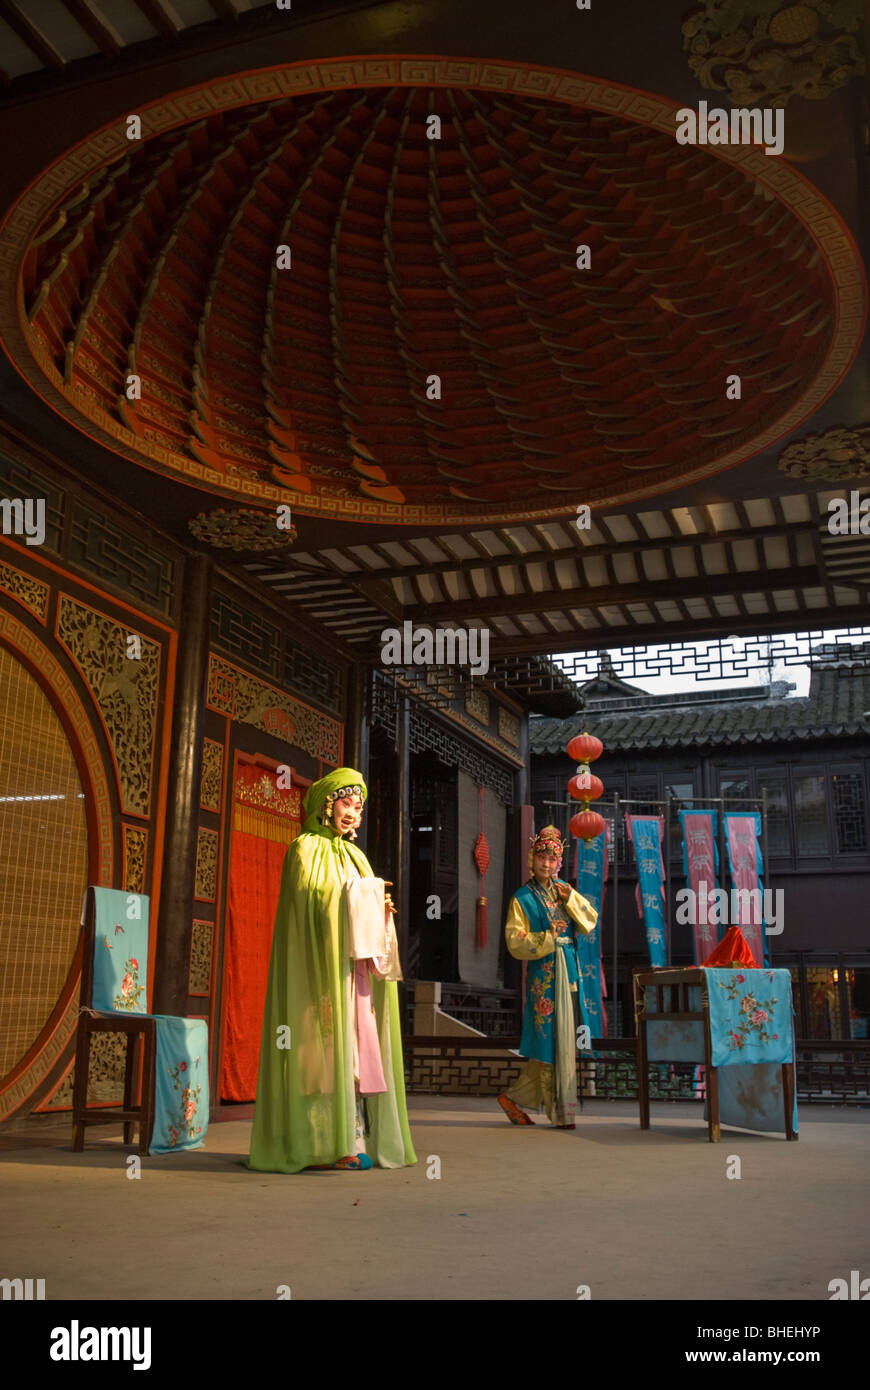 A chinese opera performance at The Venice of China, Zhouzhuang, Jiangsu province, China, Asia Stock Photo